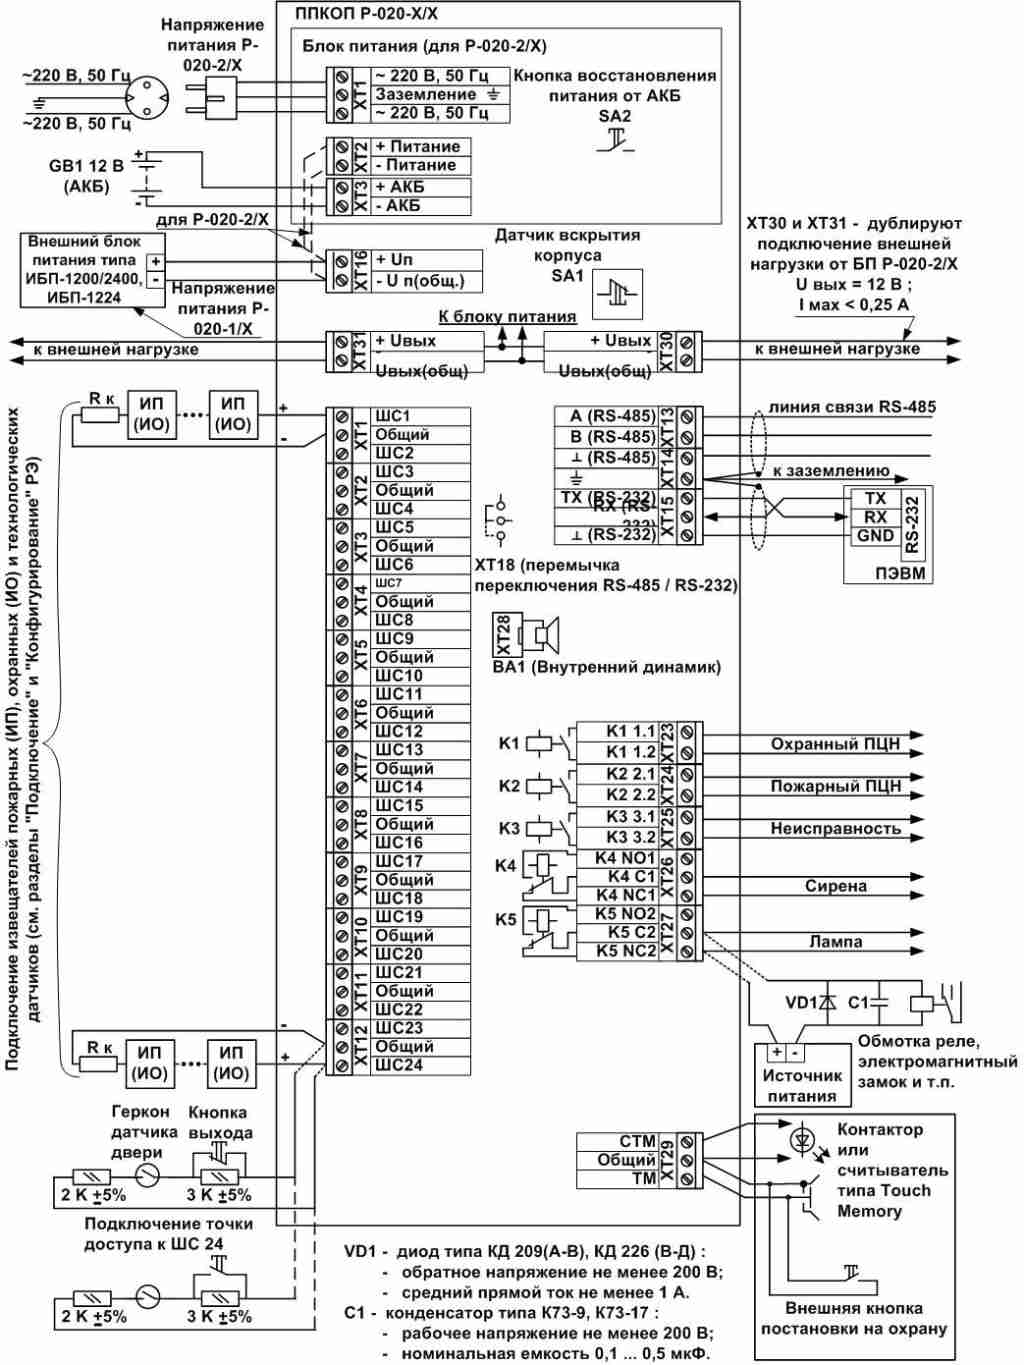 Схема подключения Р-020-2